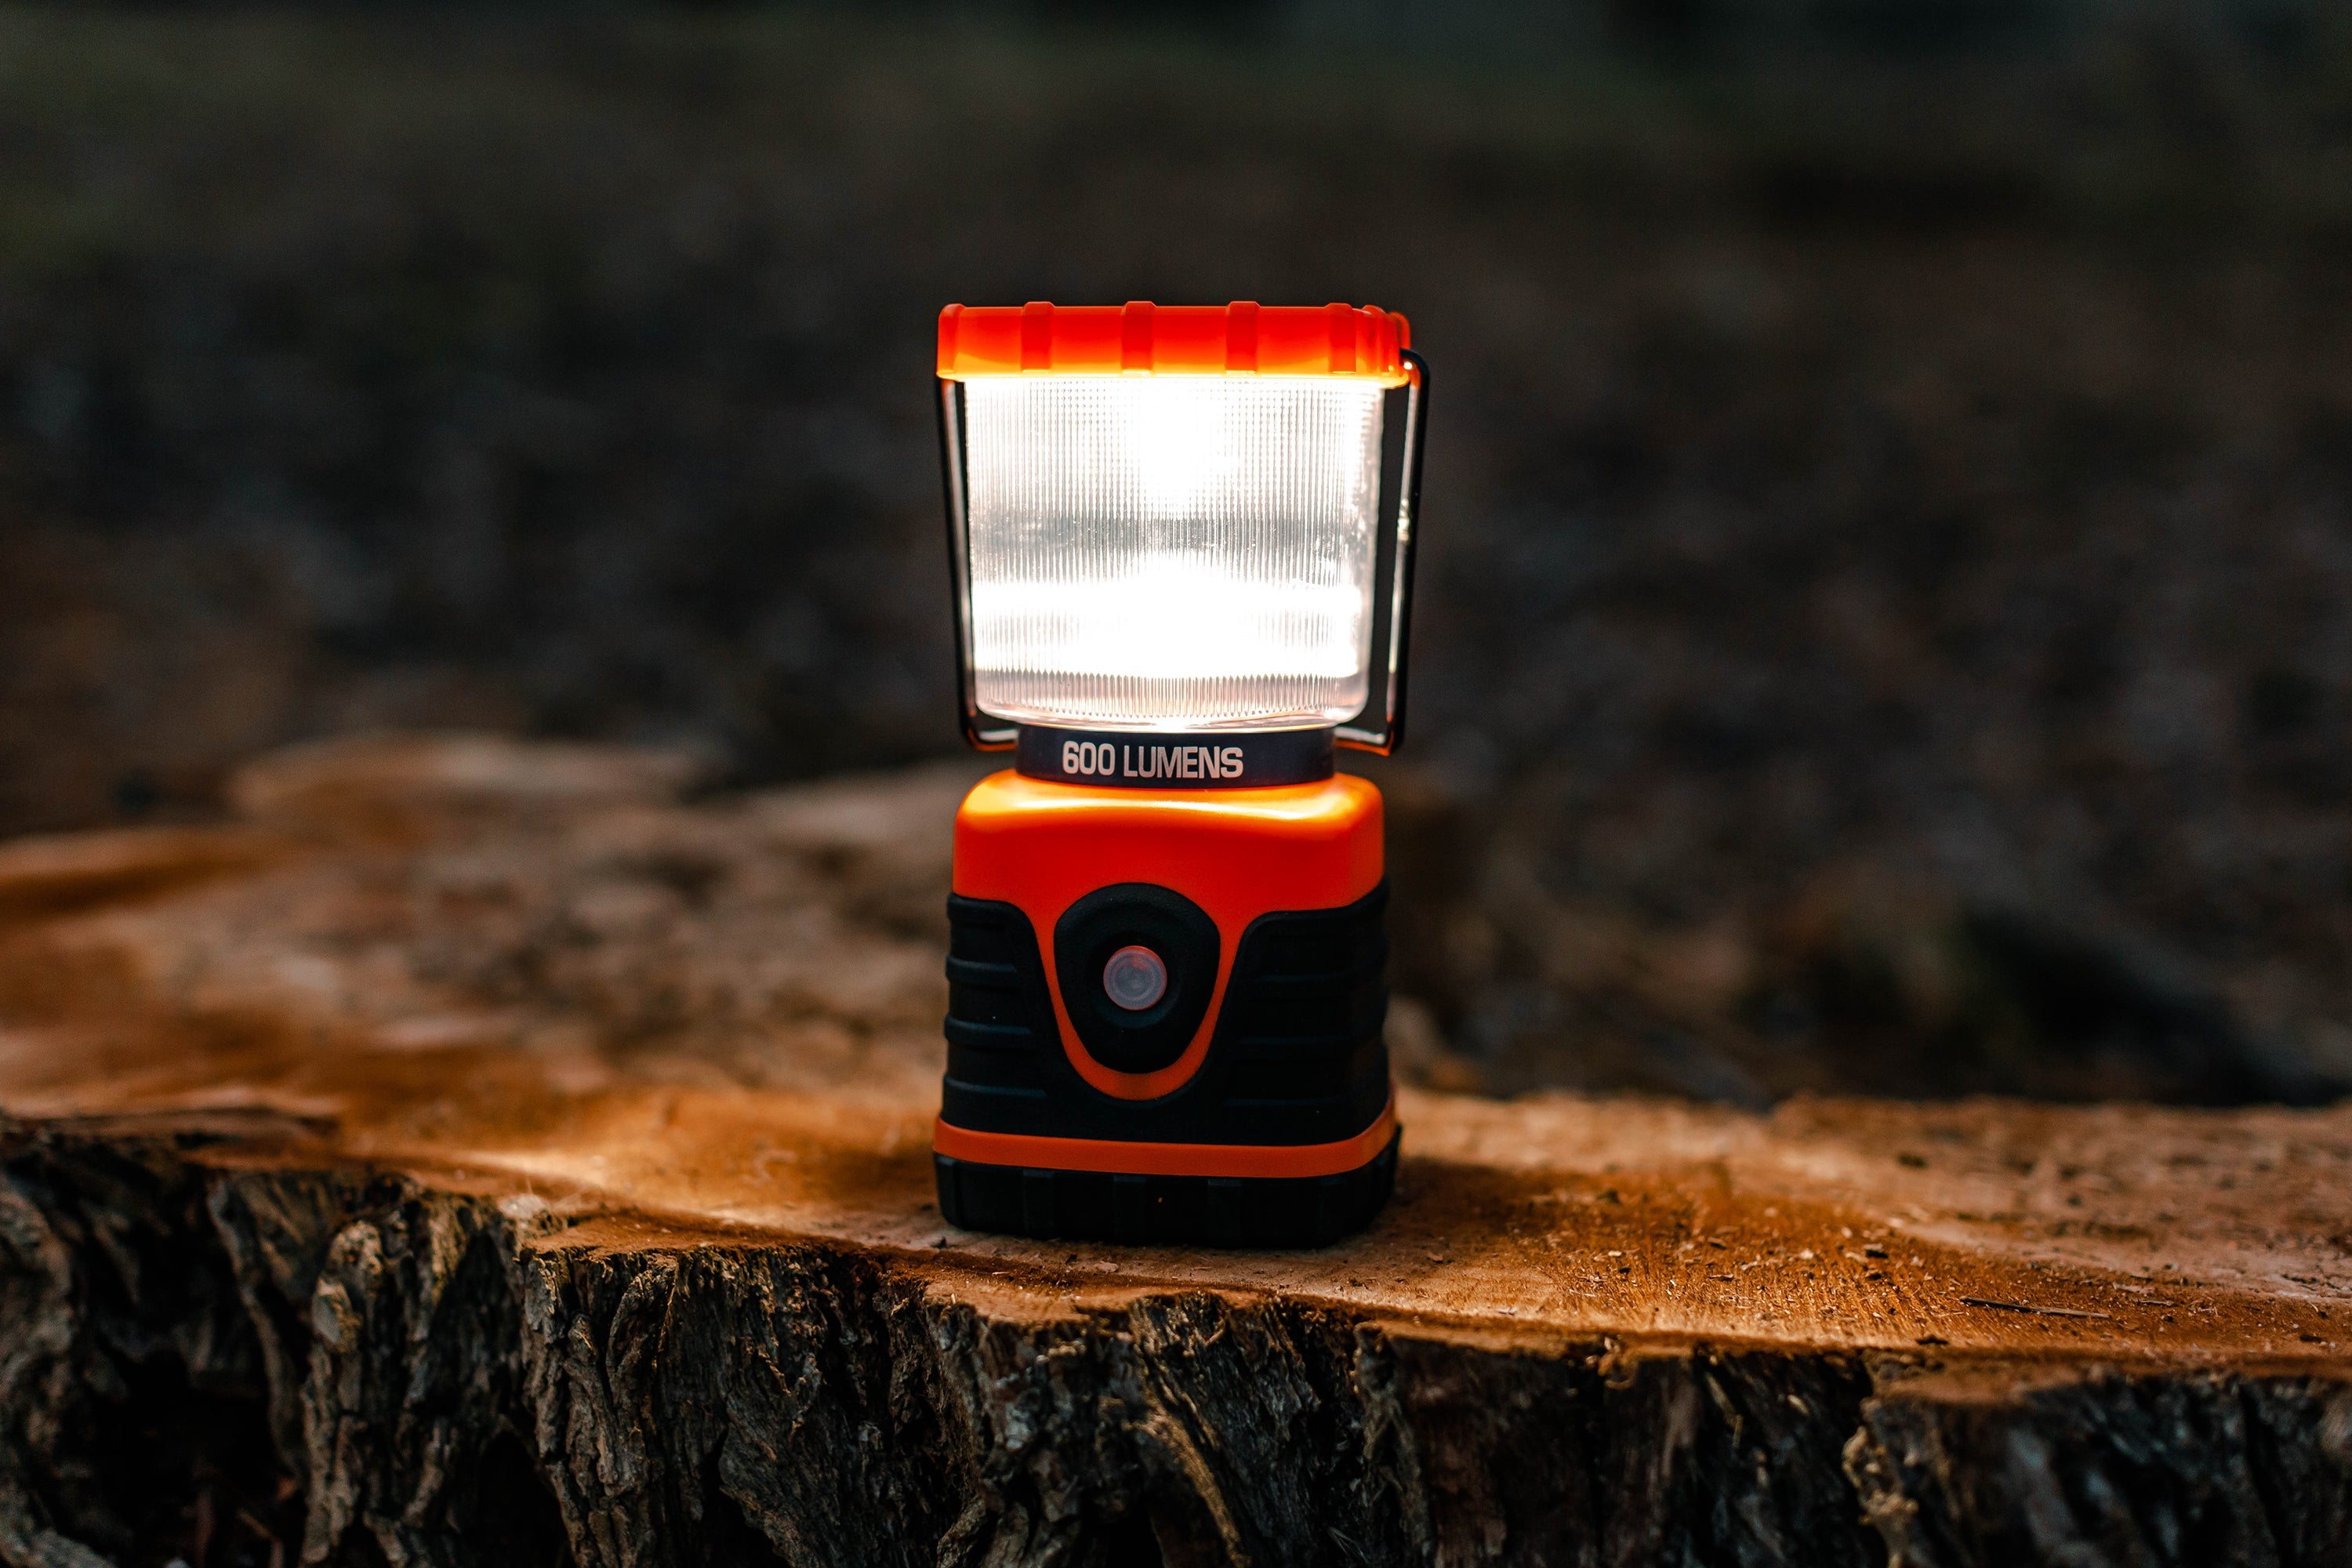 Solar 600 Lumens Lantern With Cree Bulb, Usb Plug In